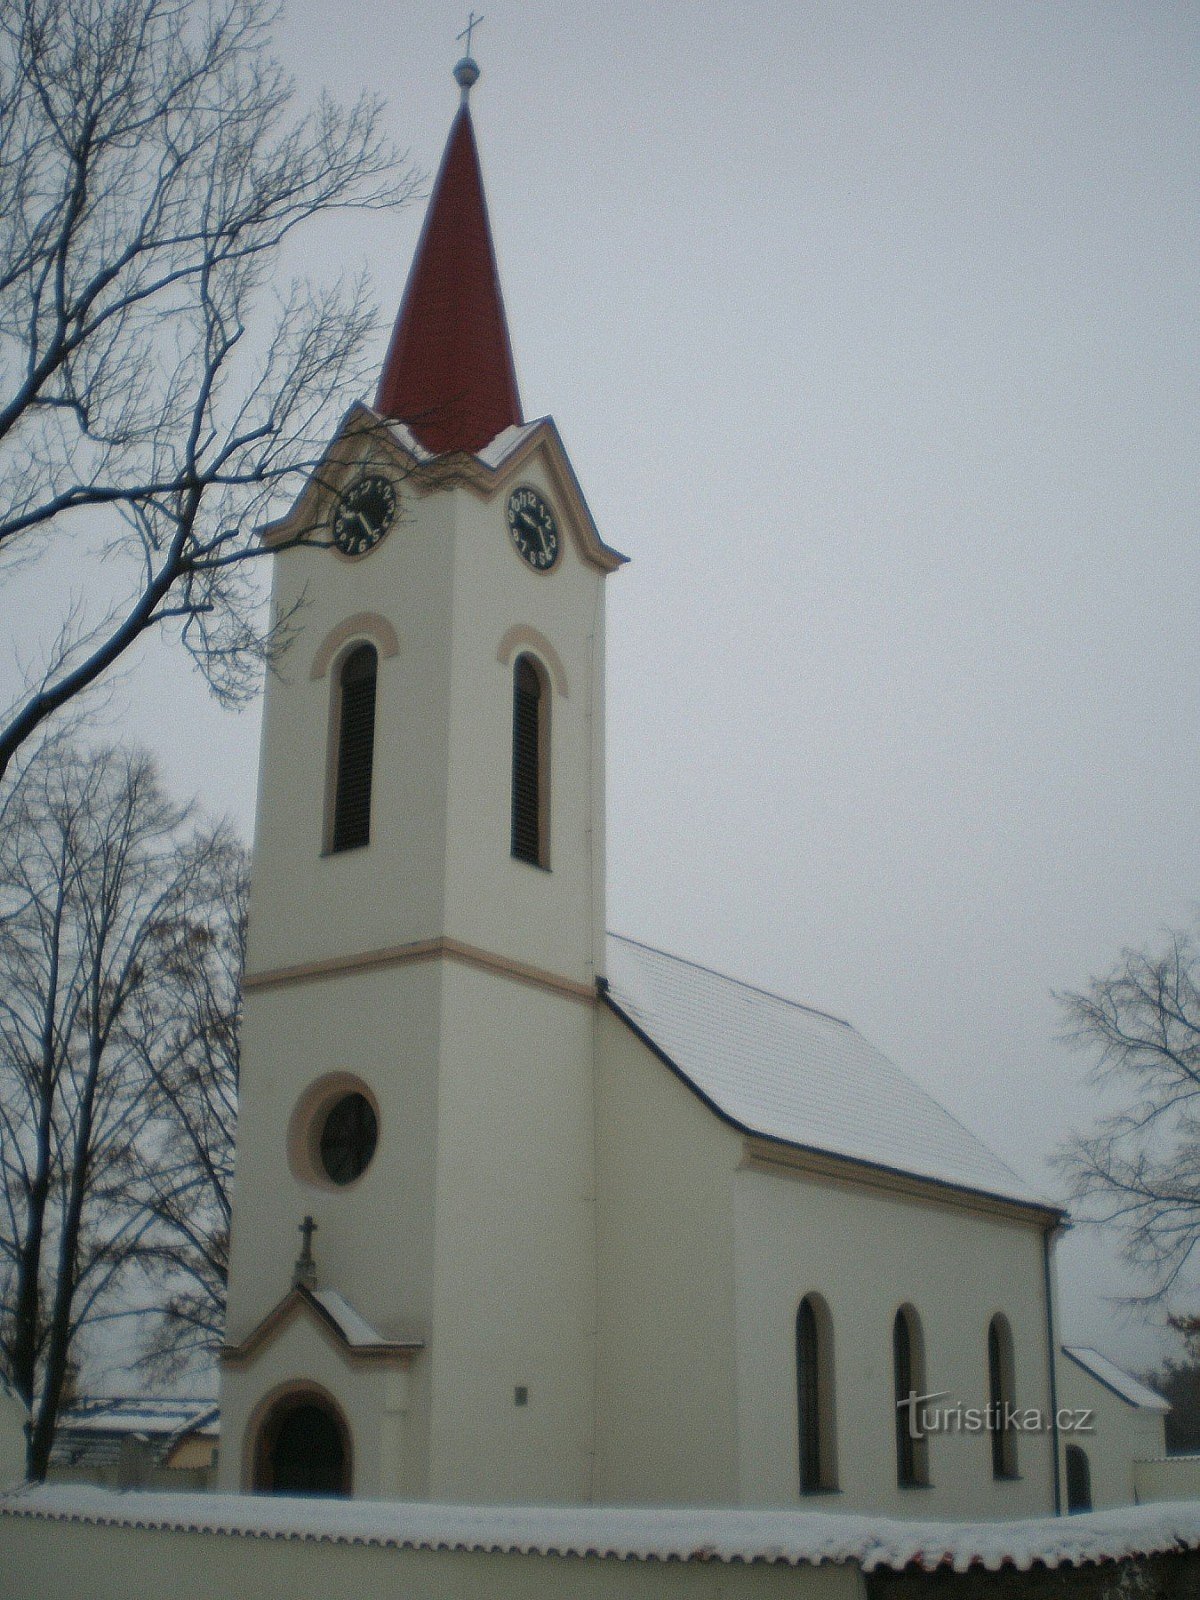 Dubeček - biserica Sf. Petru